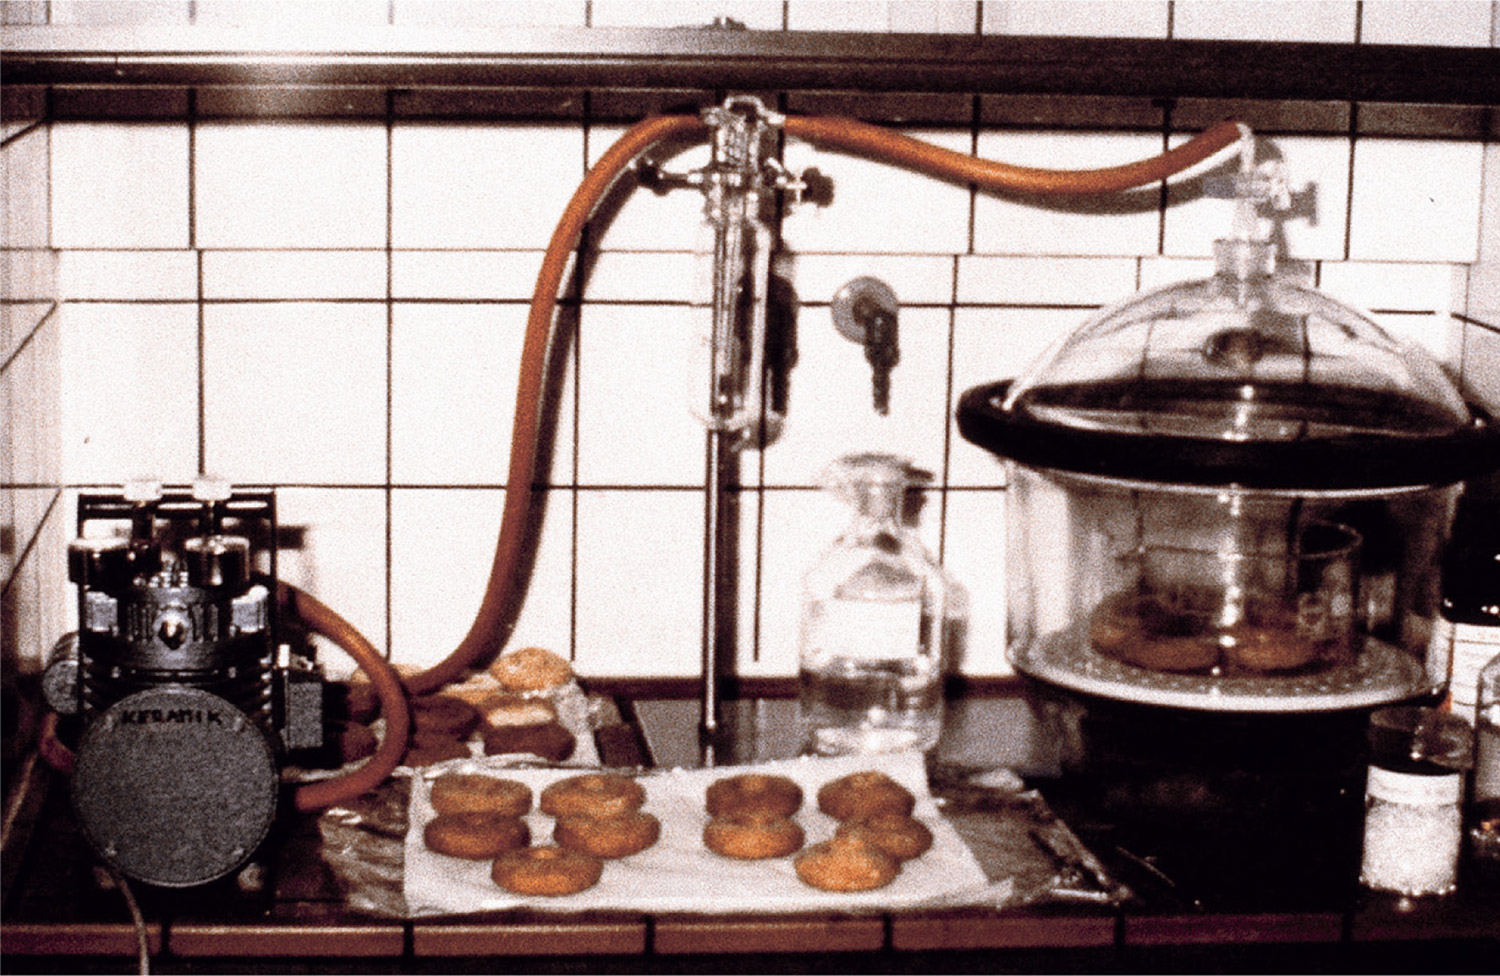 A photograph of Robert Gober’s doughnuts undergoing conservation at Scheidemann's studio.